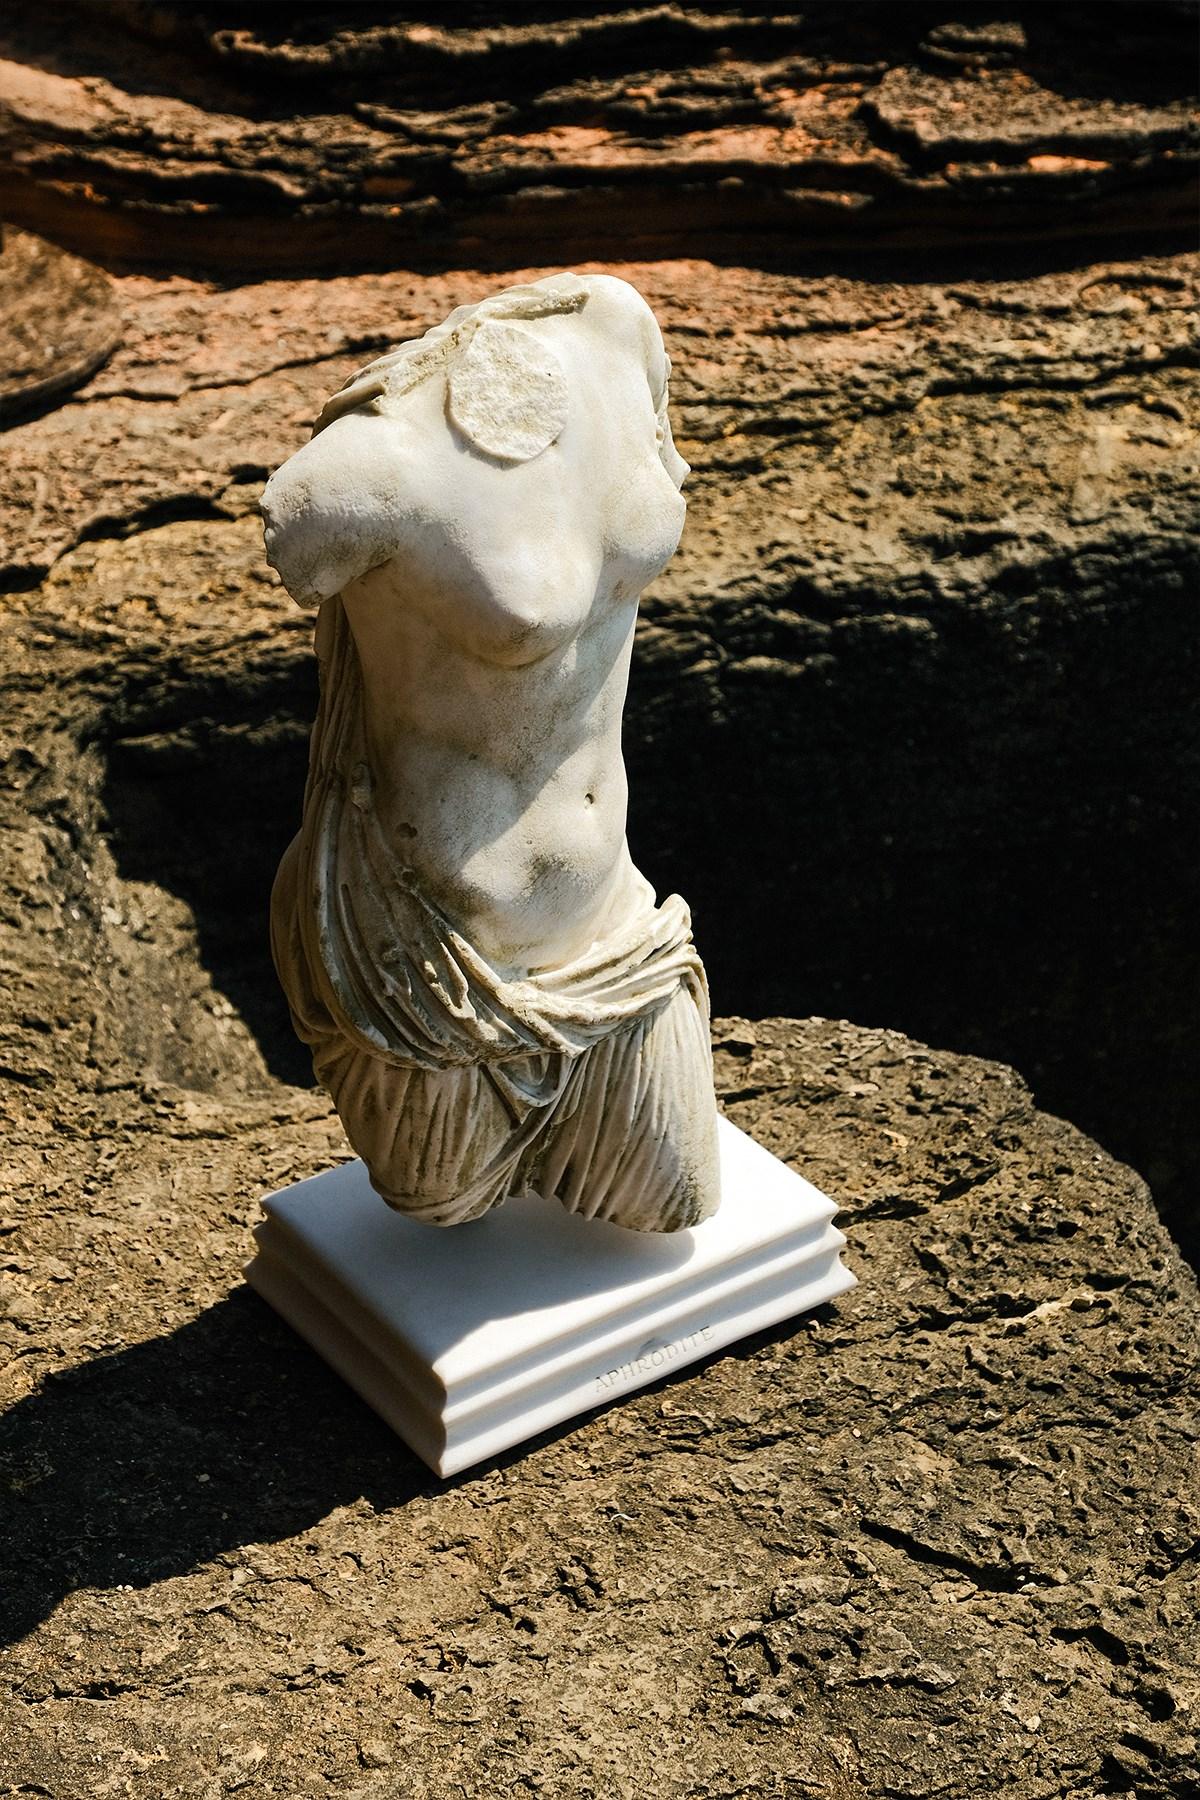 Afrodita es conocida como la diosa del amor y la belleza de la mitología griega. En la mitología romana se llama Venus. El original está expuesto en el Museo de Éfeso.
La selección especial de Lagu lleva las esculturas más importantes de la historia